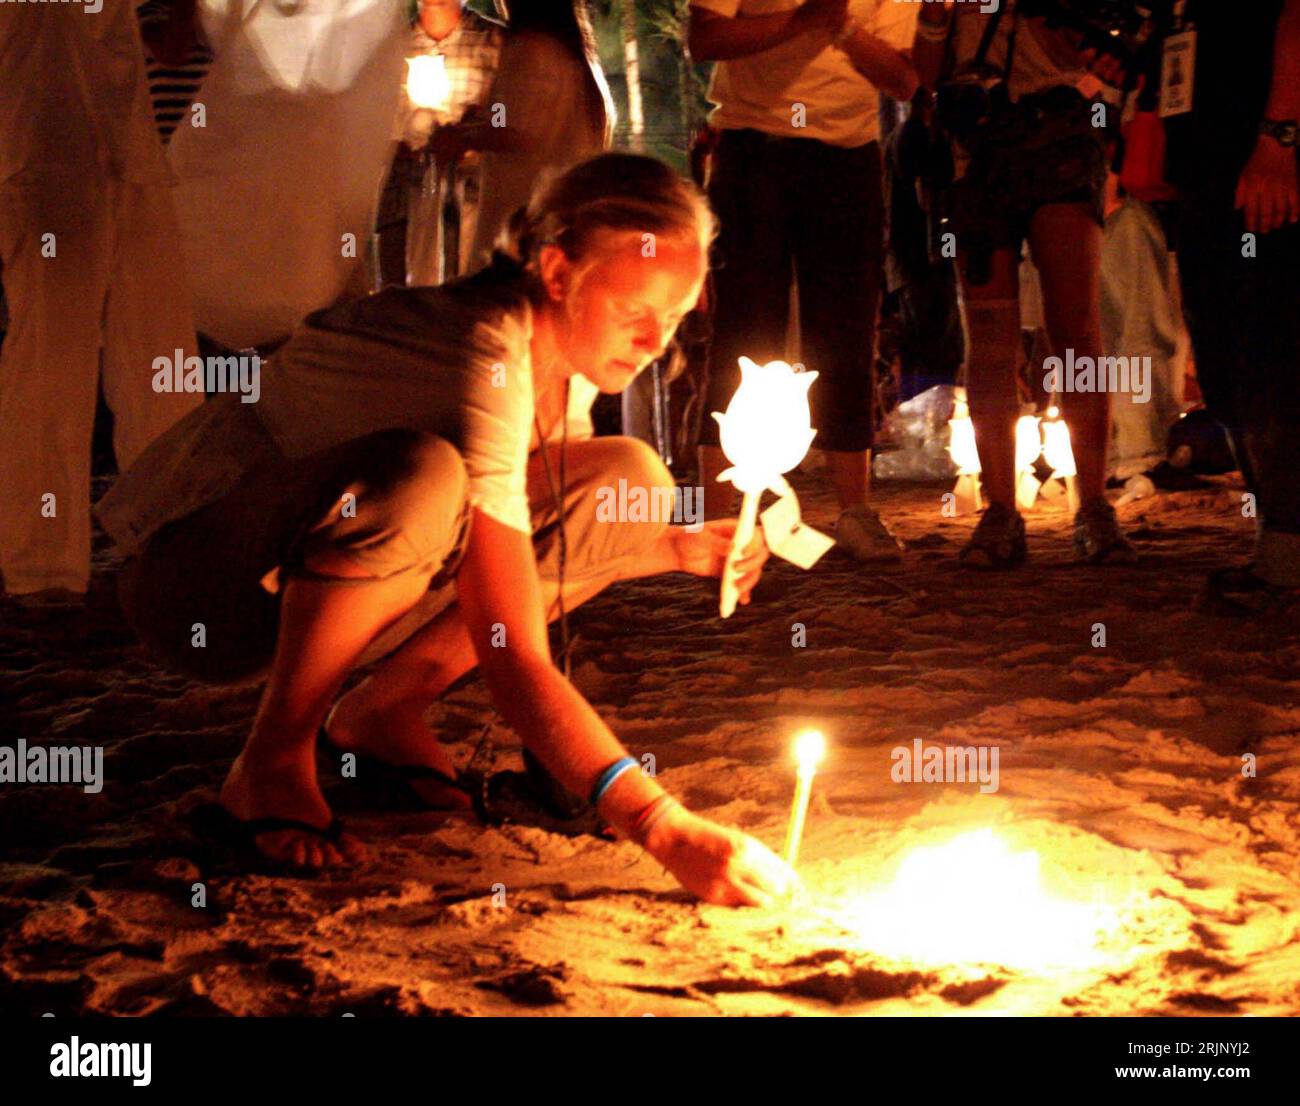 Bildnummer : 51038493 Datum : 26.12.2005 Copyright : imago/Xinhua Junge Frau entzündet eine Kerze für ihren durch den tsunami umgekommenen Angehörigen am Strand von Khao Lak BEI Nacht - Provinz Phangnga - PUBLICATIONxNOTxINxCHN, Personen, Restlichtaufnahme ; 2005, Phangnga, Phang Nga, tsunami-Katastrophe, Trauerzeremonie, Gedenkfeier, Gedenken, Erinnerung, Erster, 1. Jahrestag, Anteilnahme, Trauer, Trauernde, nachts, Nacht, Kerze, Kerzen, entzünden, anzünden, brennen, brennt, brennend, Laterne, Laternen, Angehörige, Angehöriger, Familienangehörige, Familienangehöriger; quer, Kbdig, Einzelbild, Banque D'Images